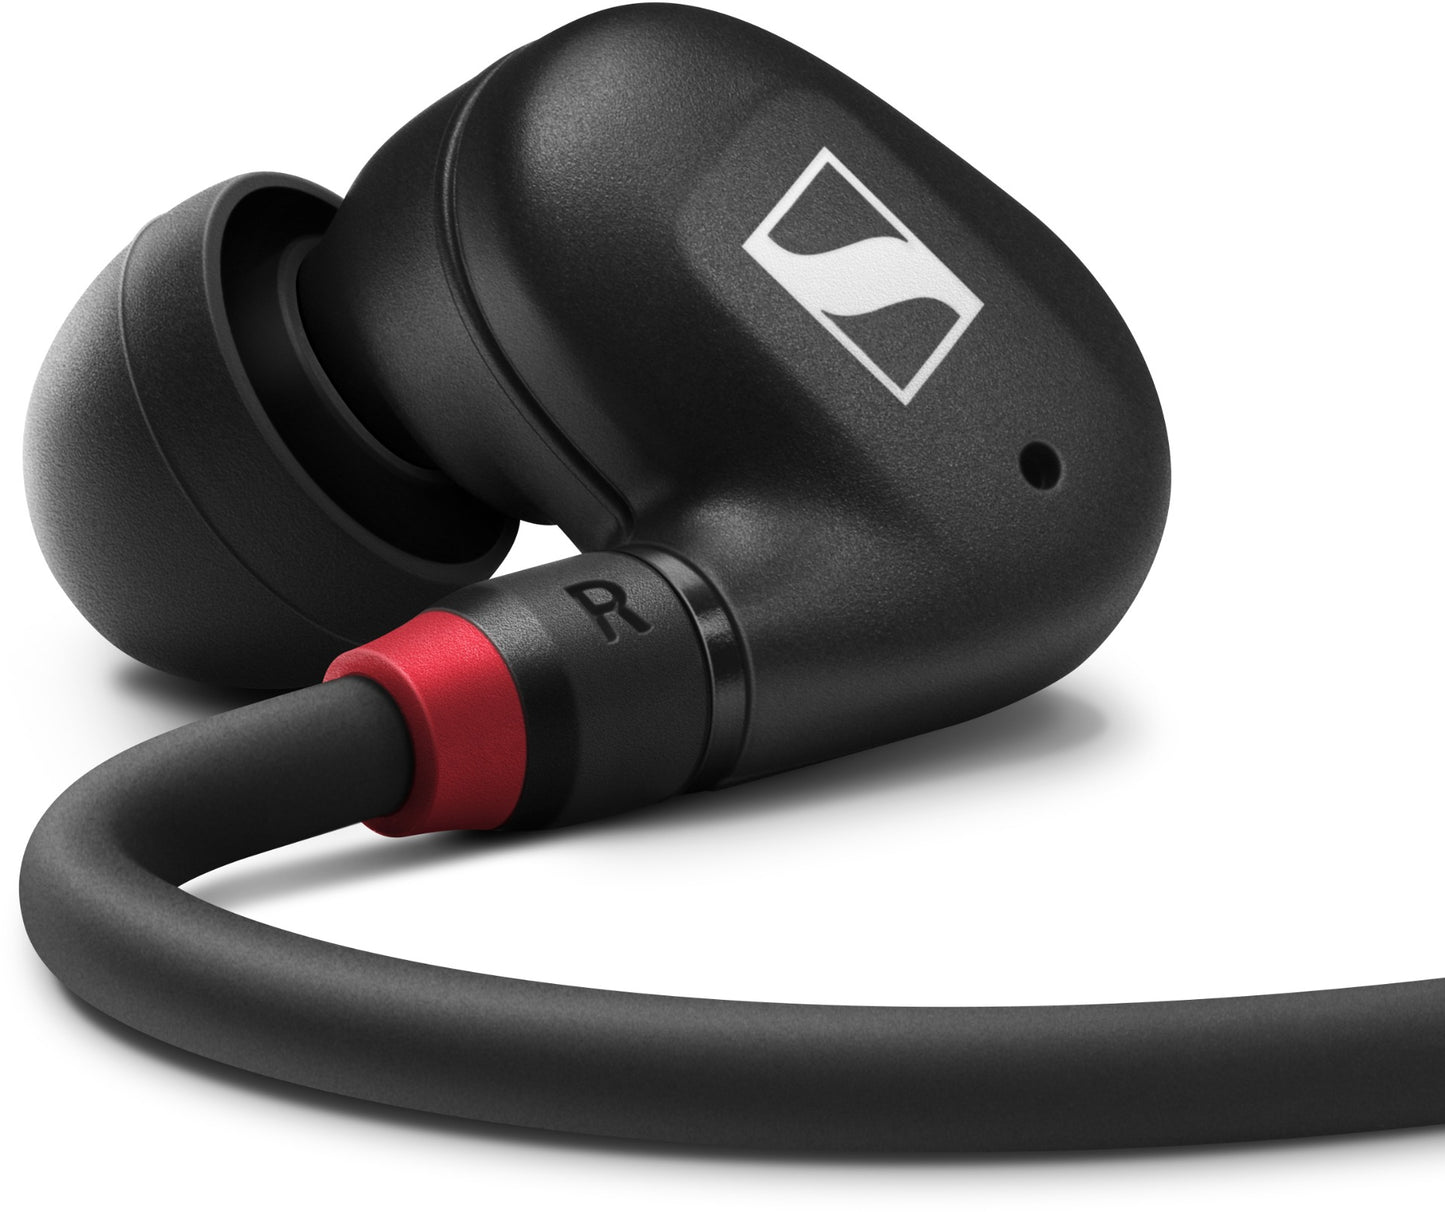 Sennheiser IE 100 Pro Dynamic Wireless In-Ear Headphones, Black